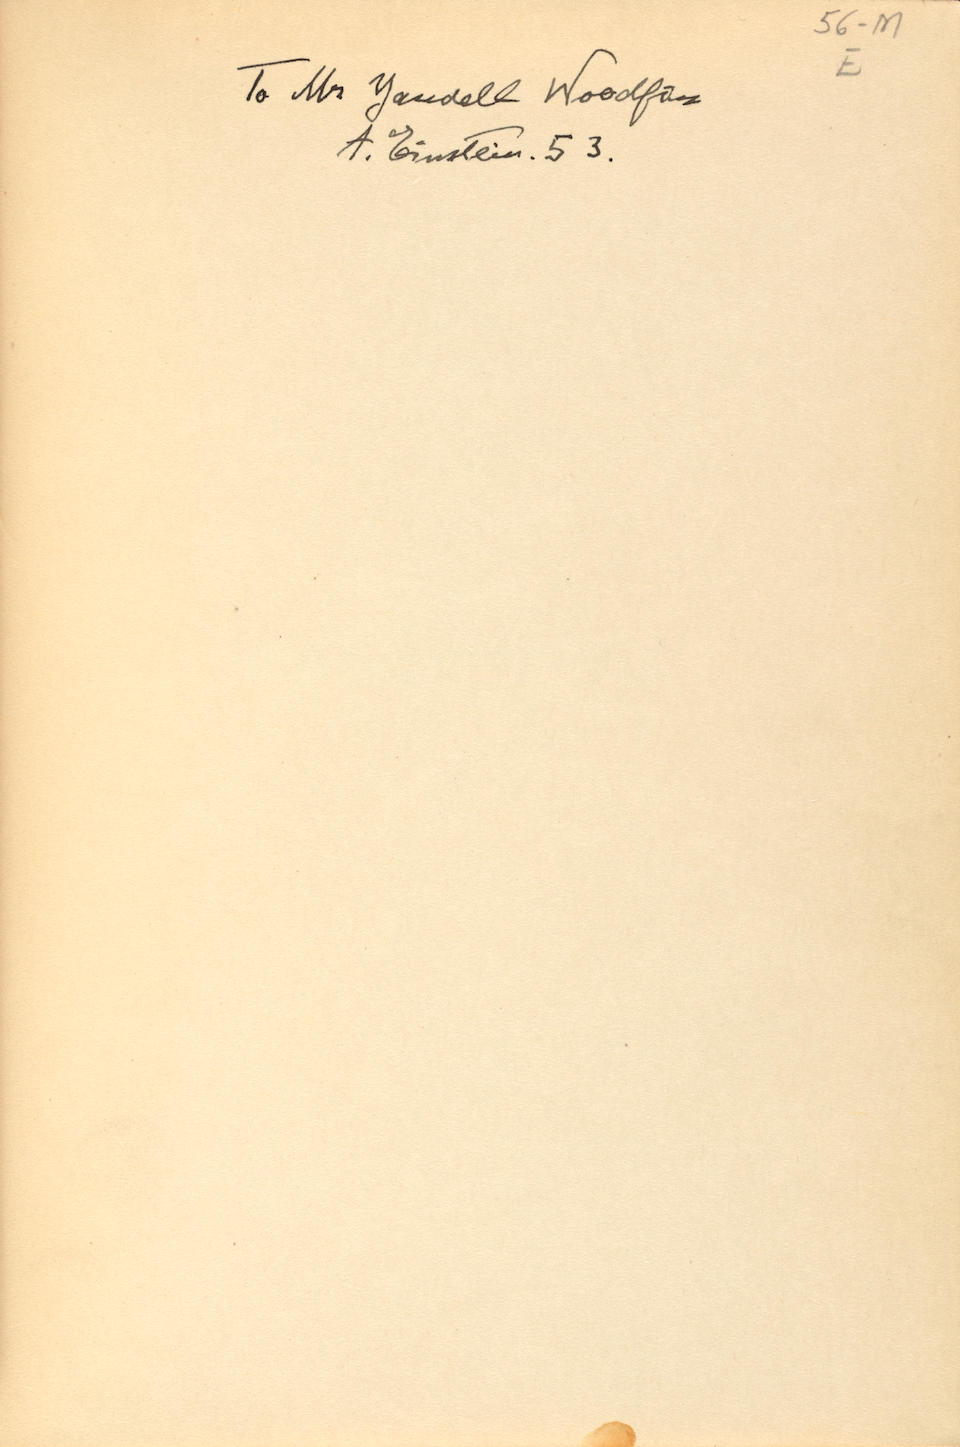 [EINSTEIN] INSCRIBED COPY OF THE DEFINITIVE EXPOSITION OF RELATIVITY. EINSTEIN, ALBERT. 1879-195...